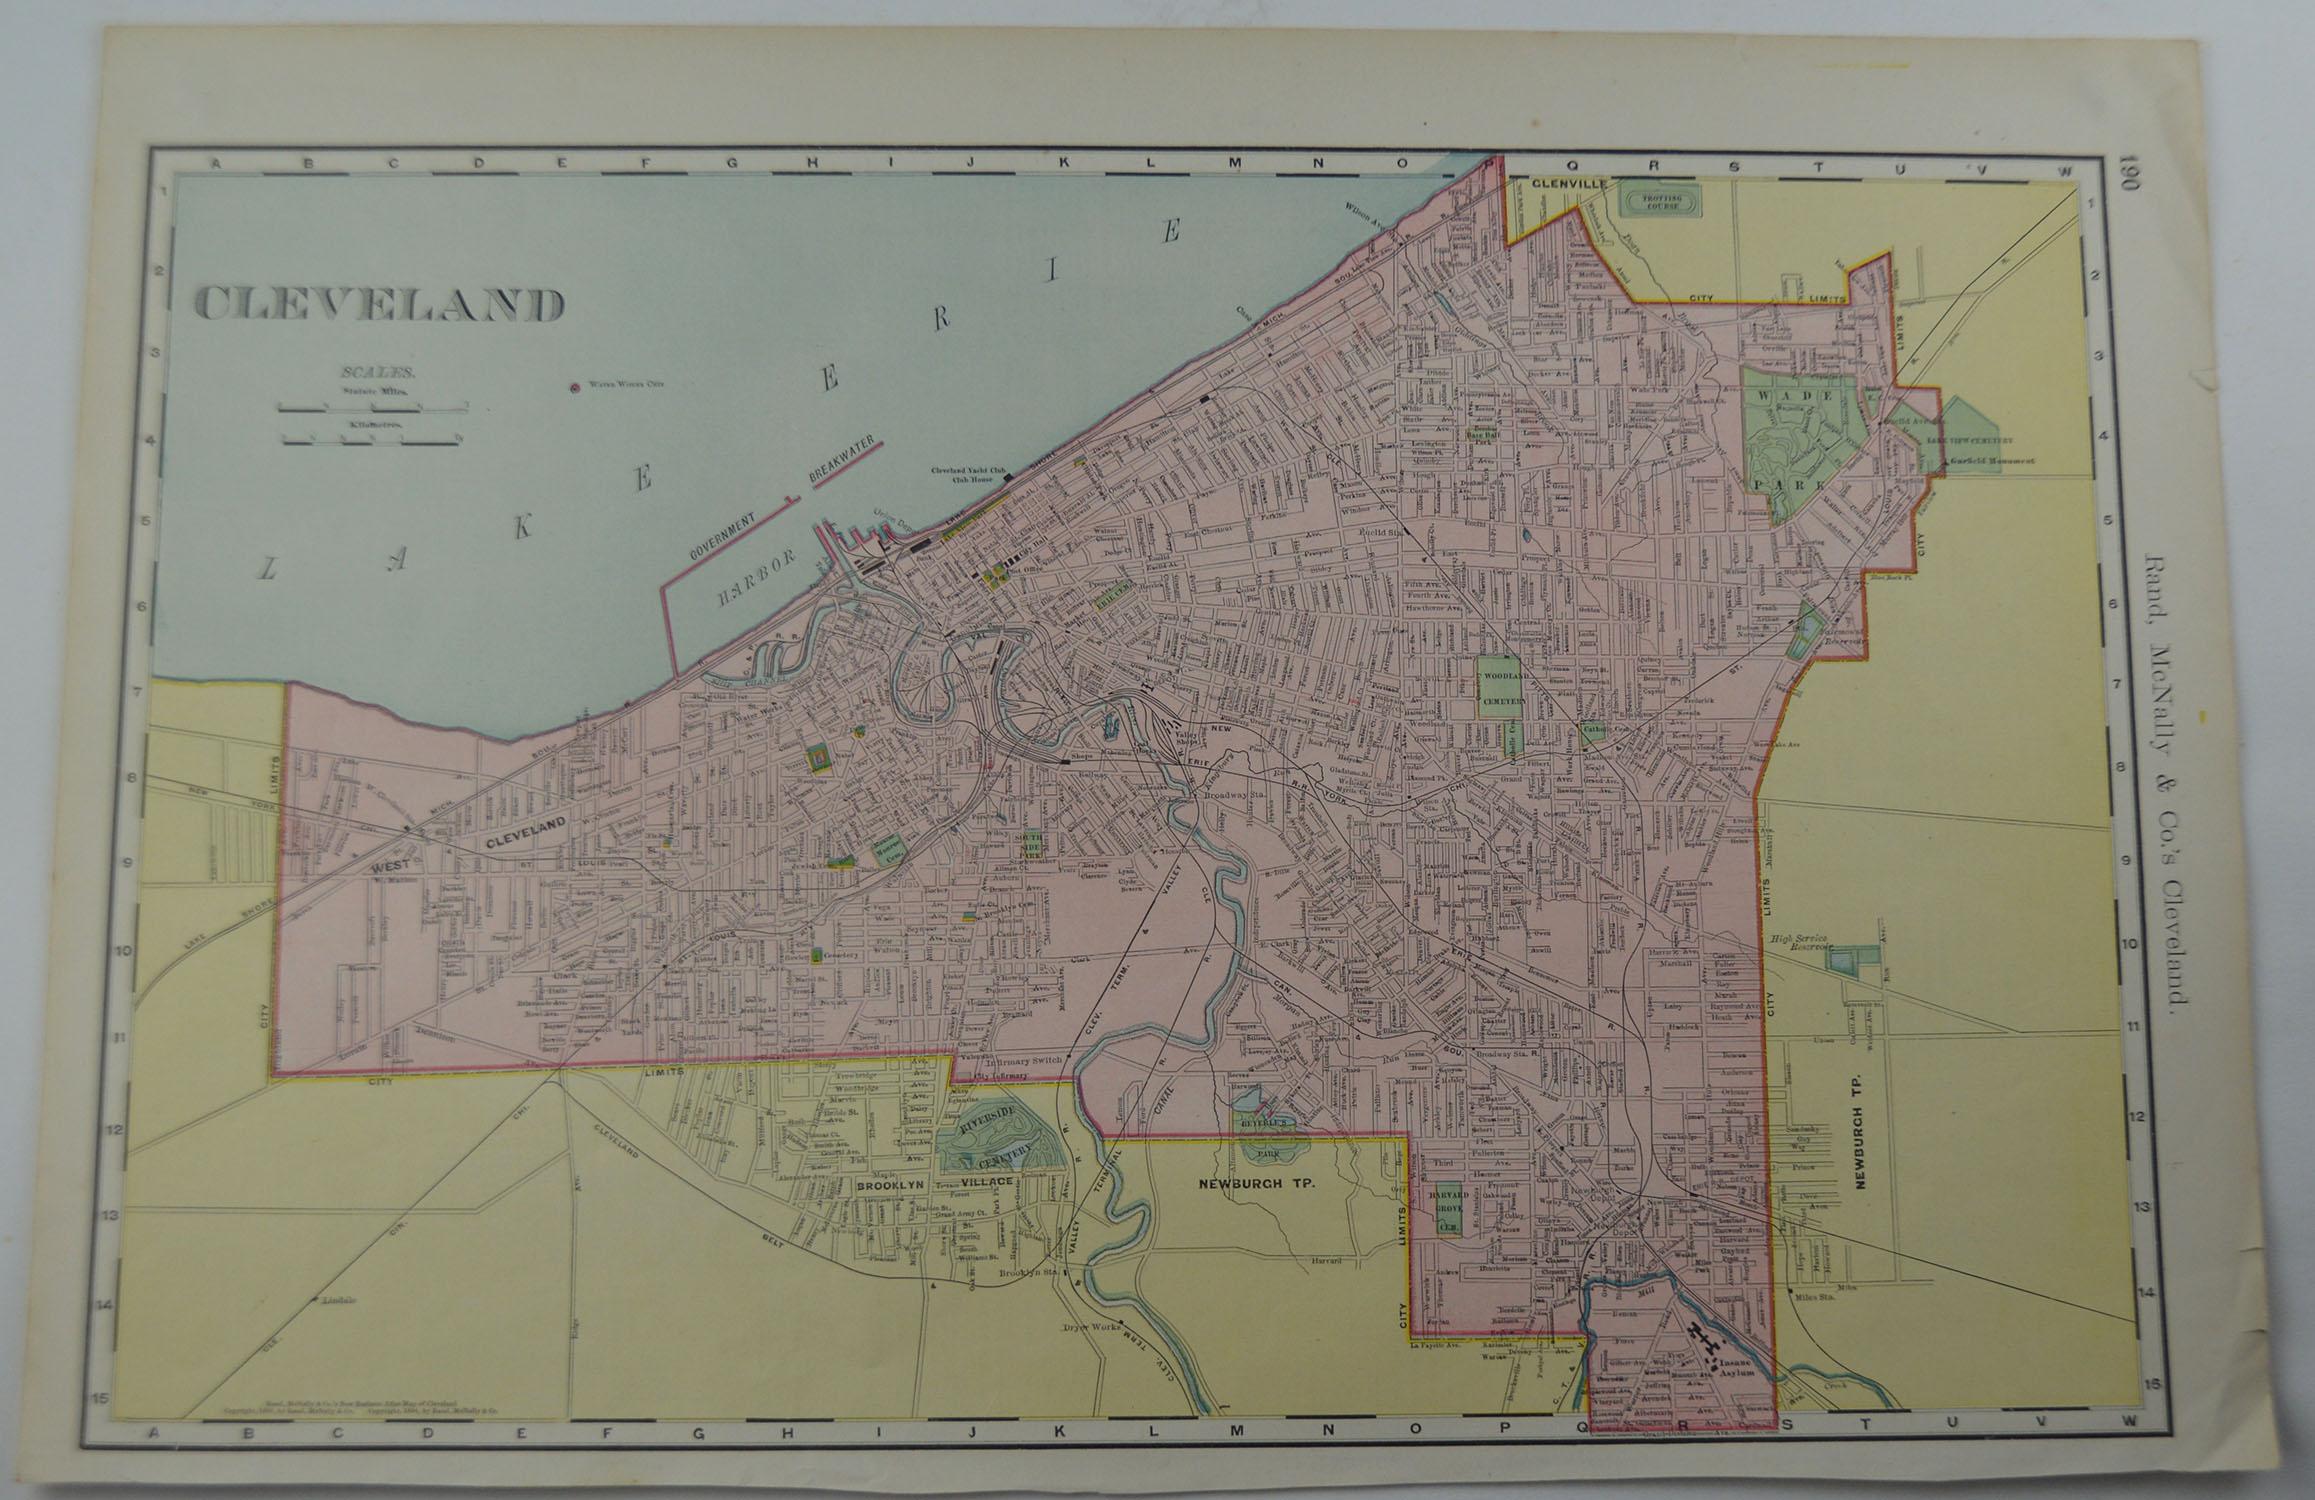 Other Original Antique City Plan of Cleveland, Ohio USA, circa 1900